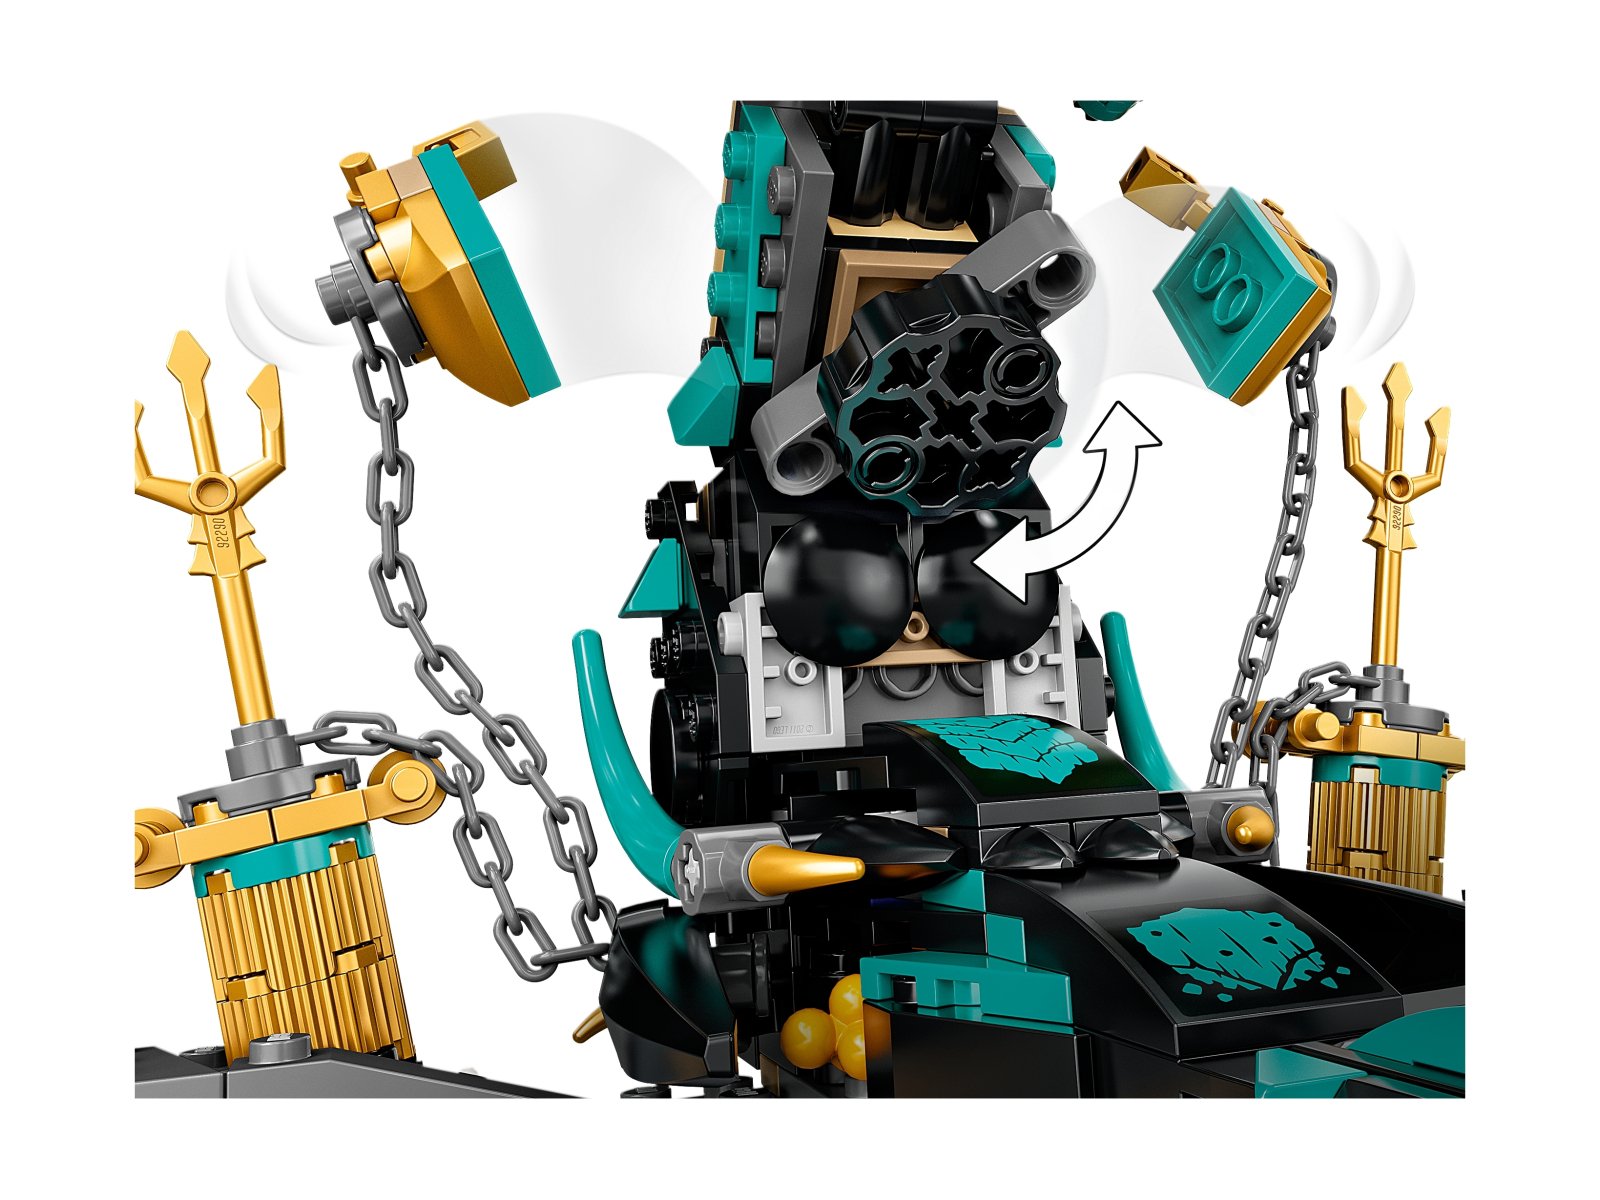 LEGO 71755 Świątynia Bezkresnego Morza